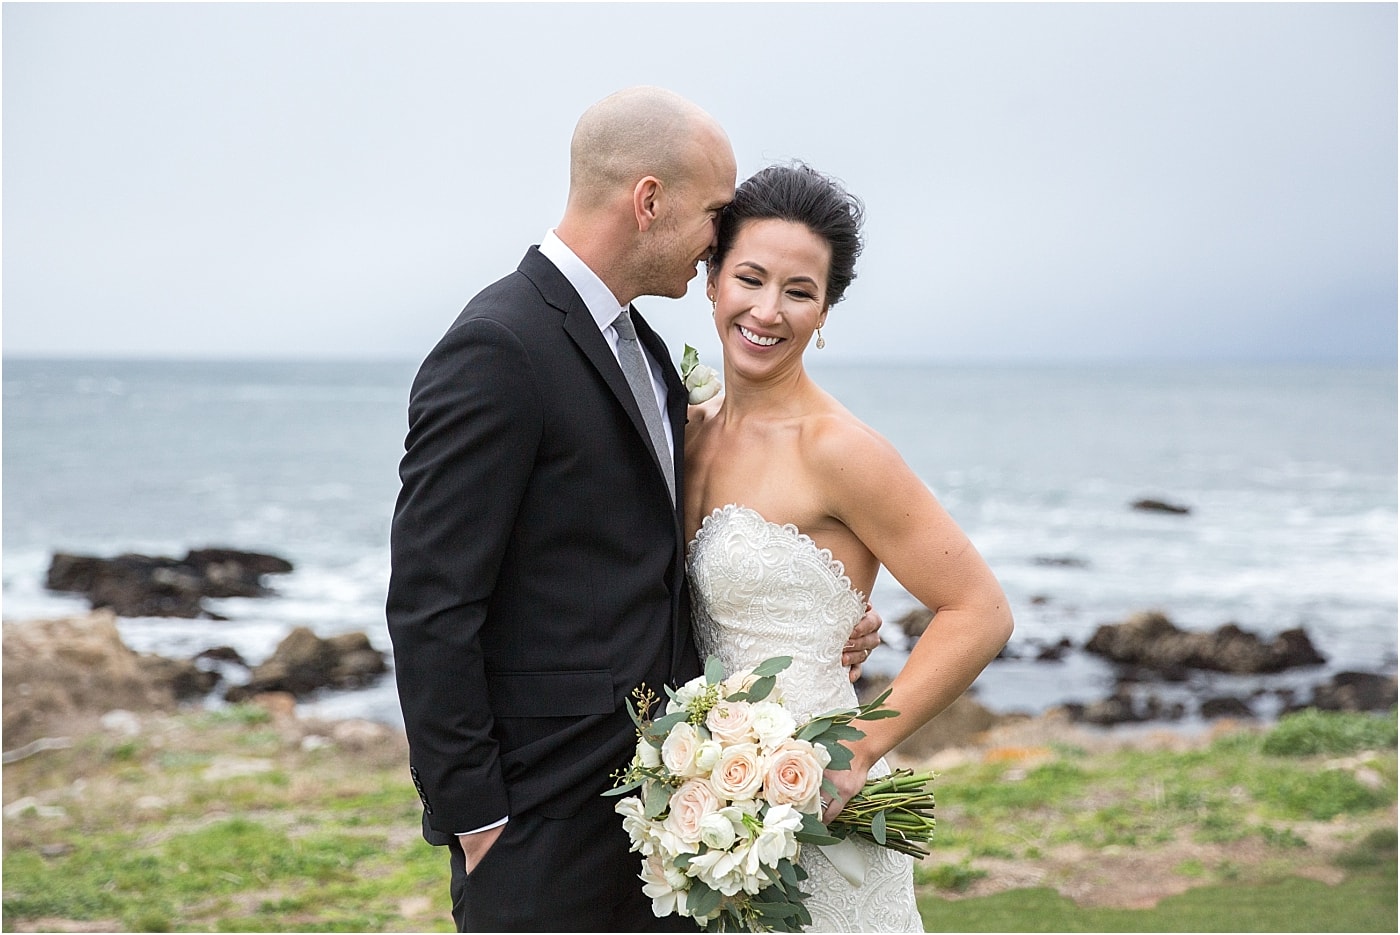 Pebble Beach Wedding Photographer | Monterey Peninsula Country Club Wedding | Country Club Wedding | Oceanfront Wedding | Luxury Wedding